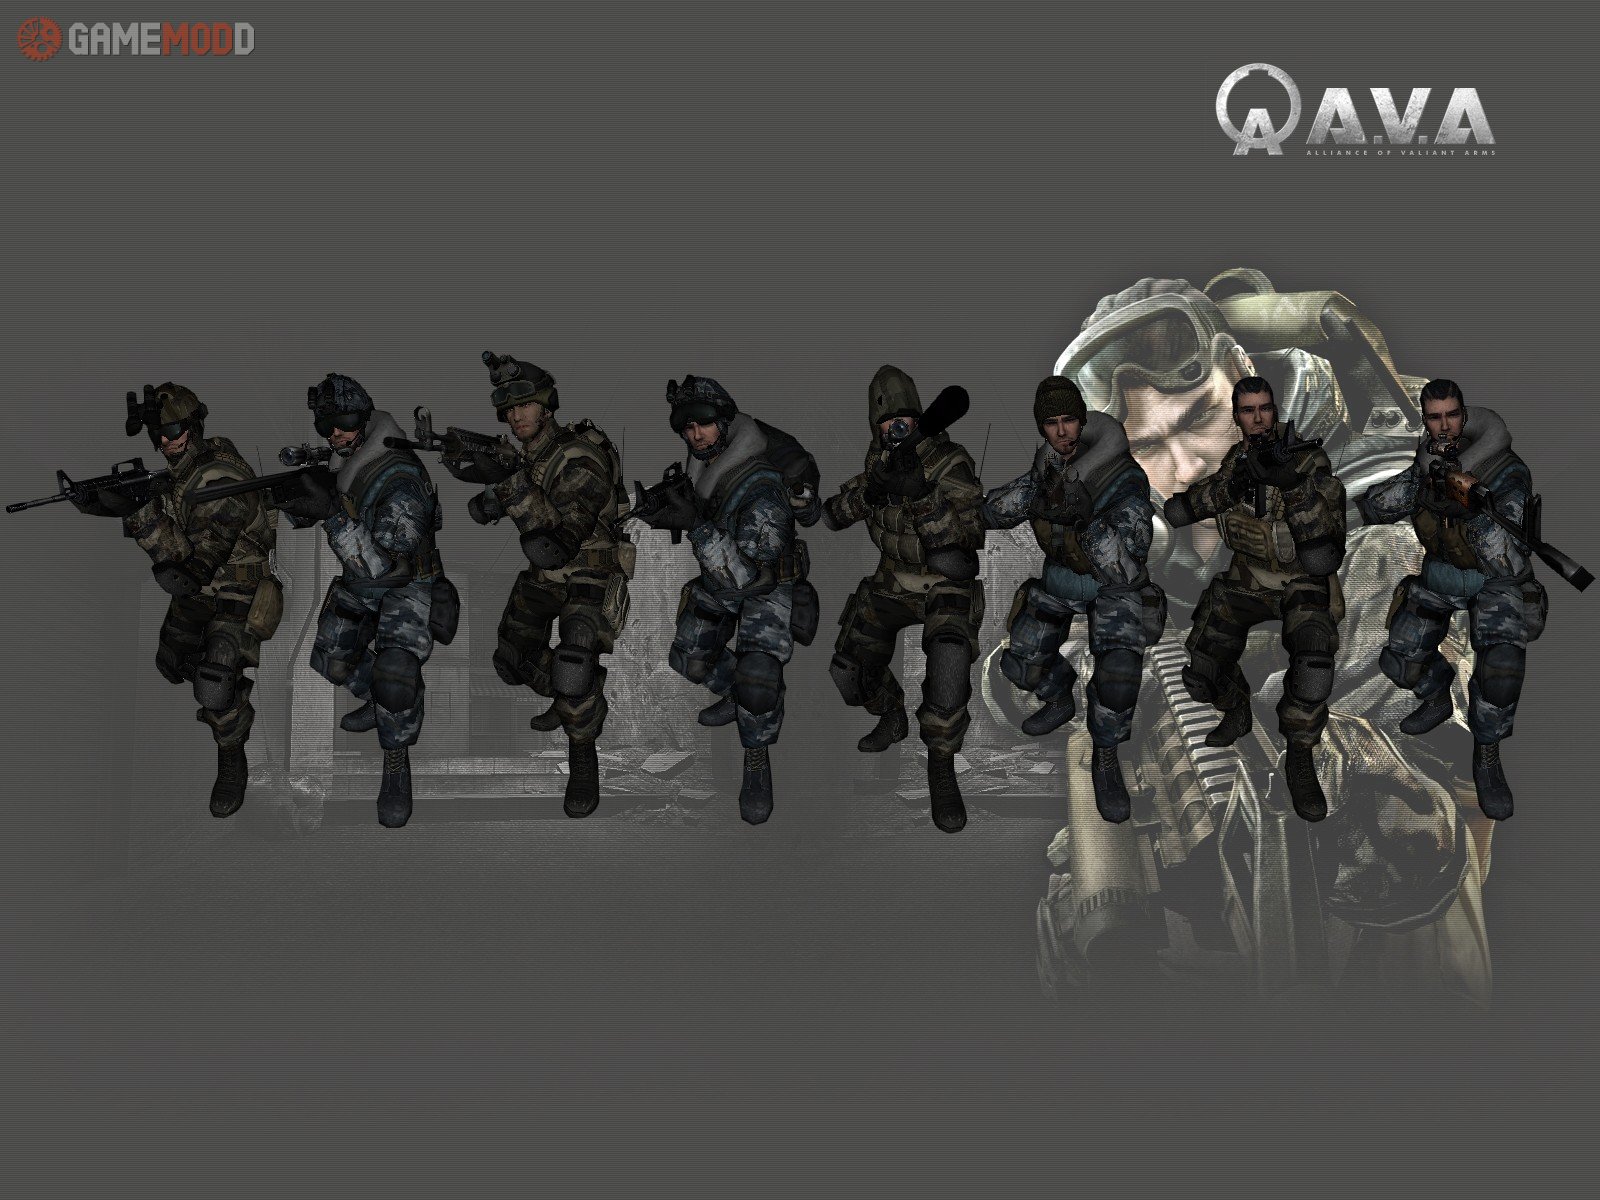 Cs 1 6 Skins Players Packs Counter Terrorist Gamemodd